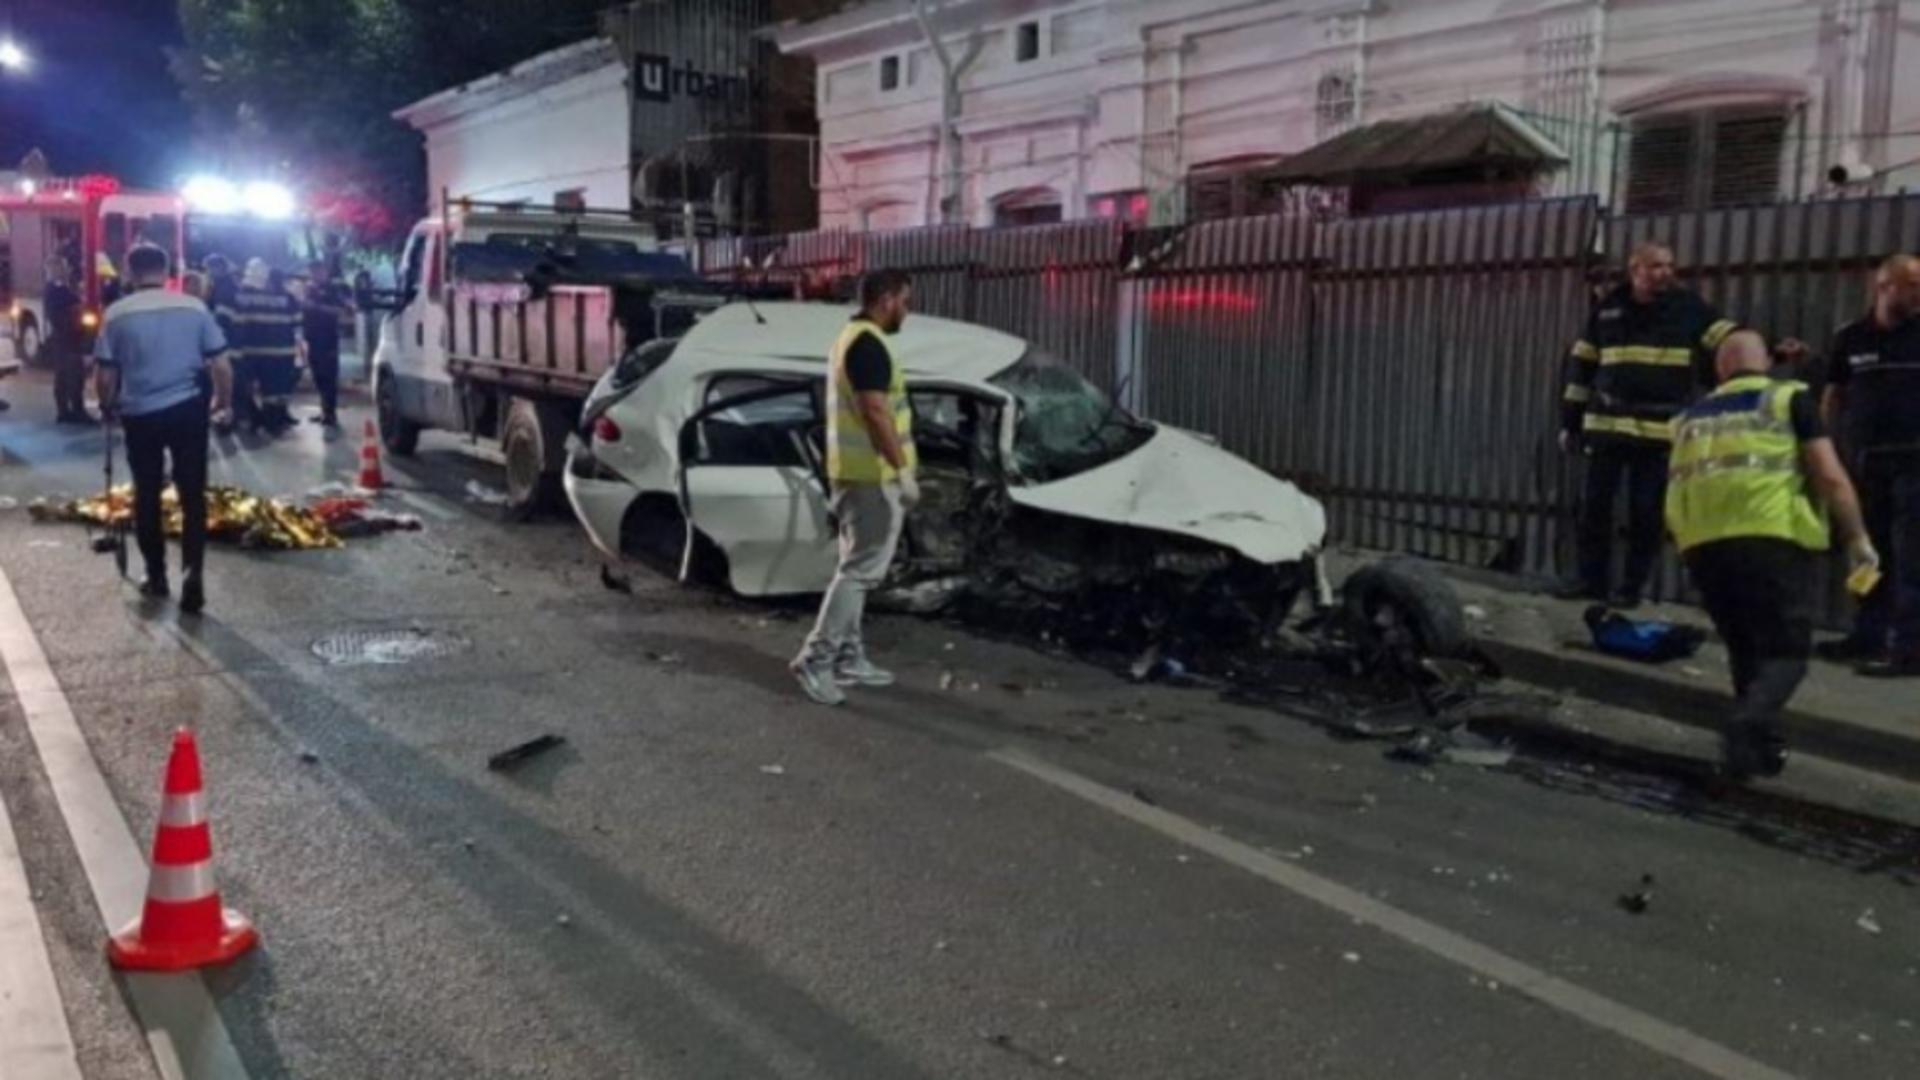 Șoferița beată care a ucis 4 muncitori, acuzată de omor calificat / Foto: Ziarul de Iași